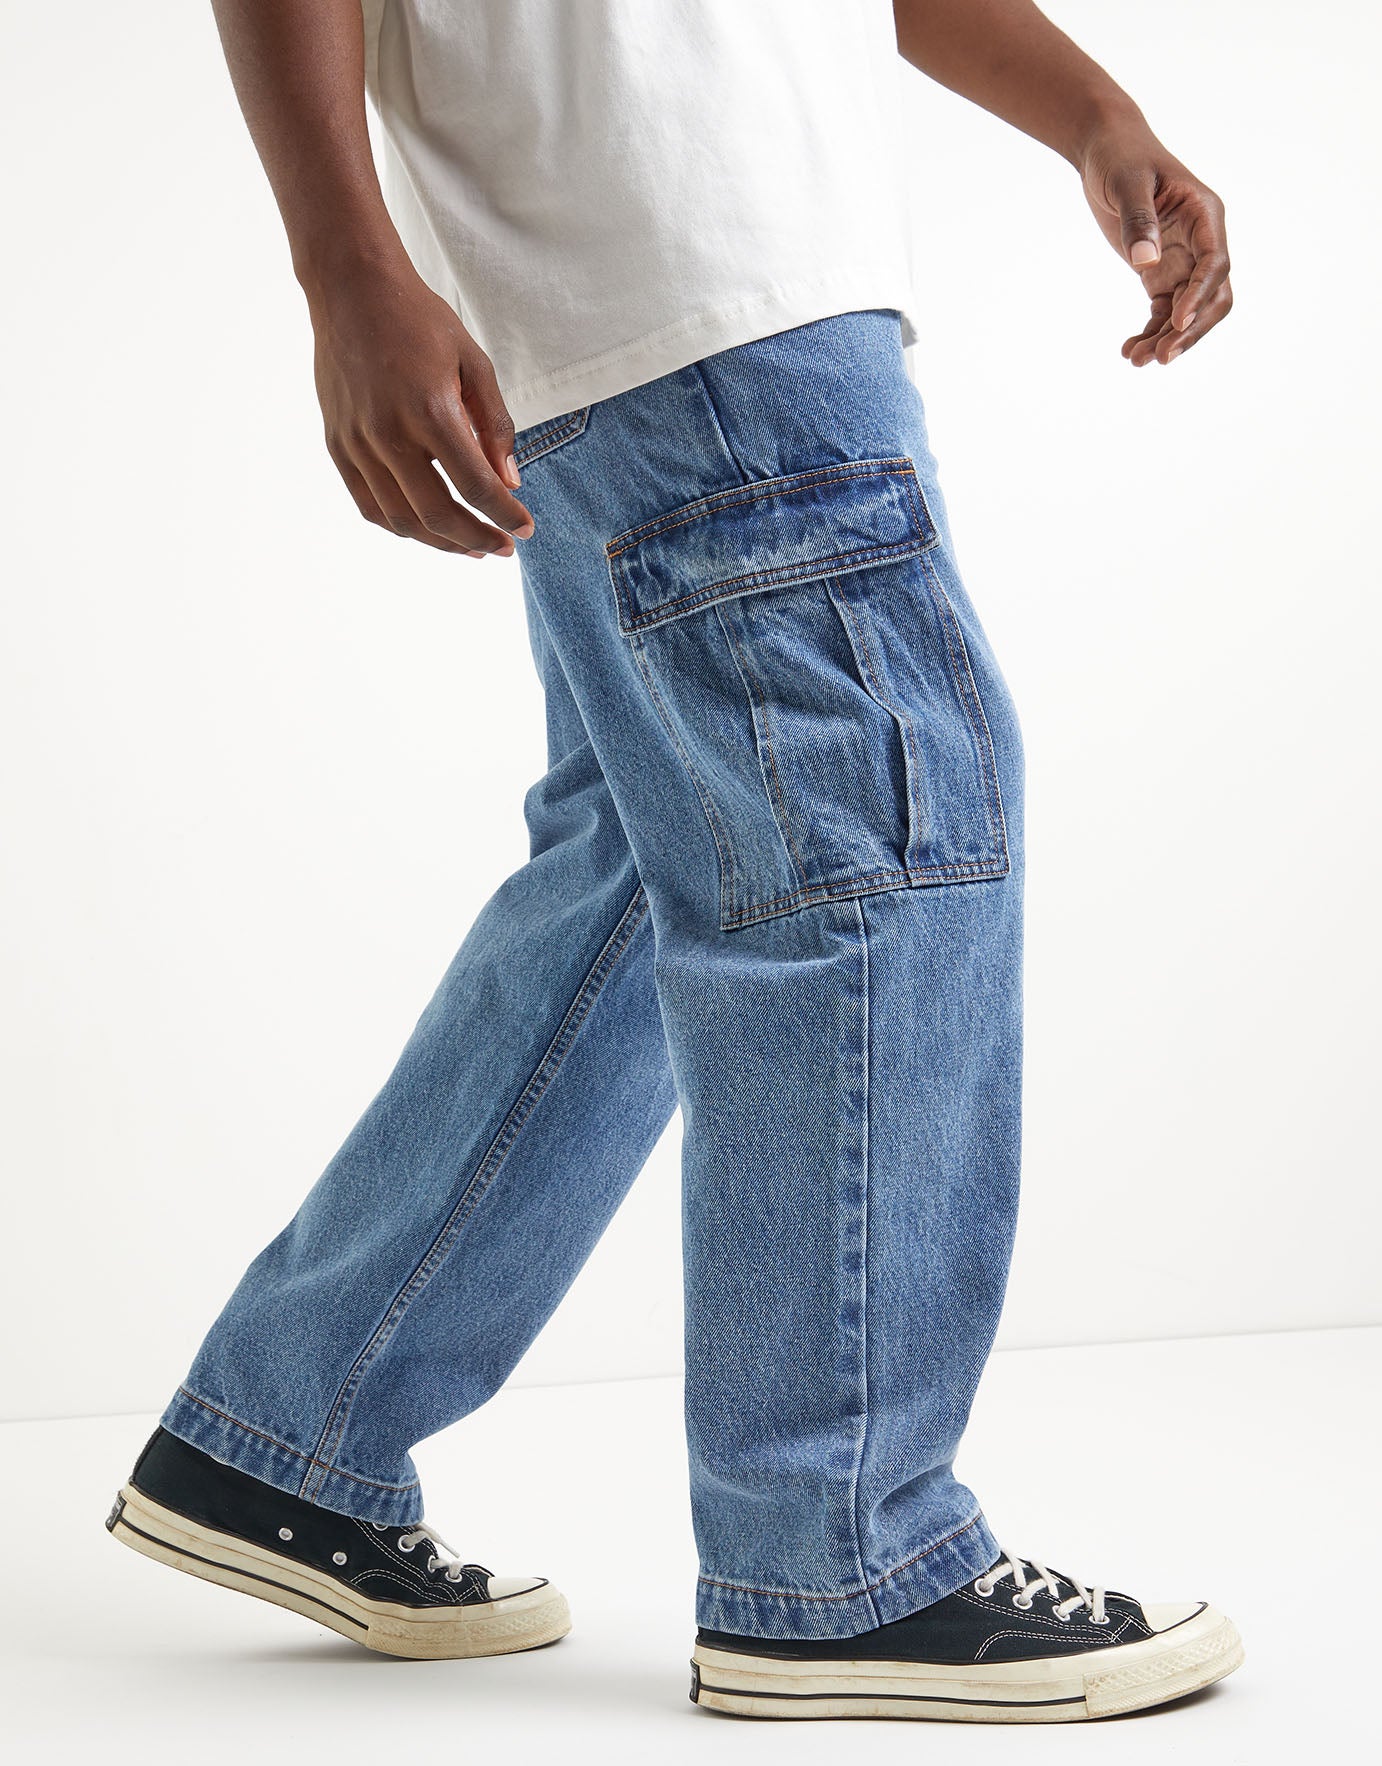 Pants For Men  Pure Cotton Baggy Pants  Navy Blue